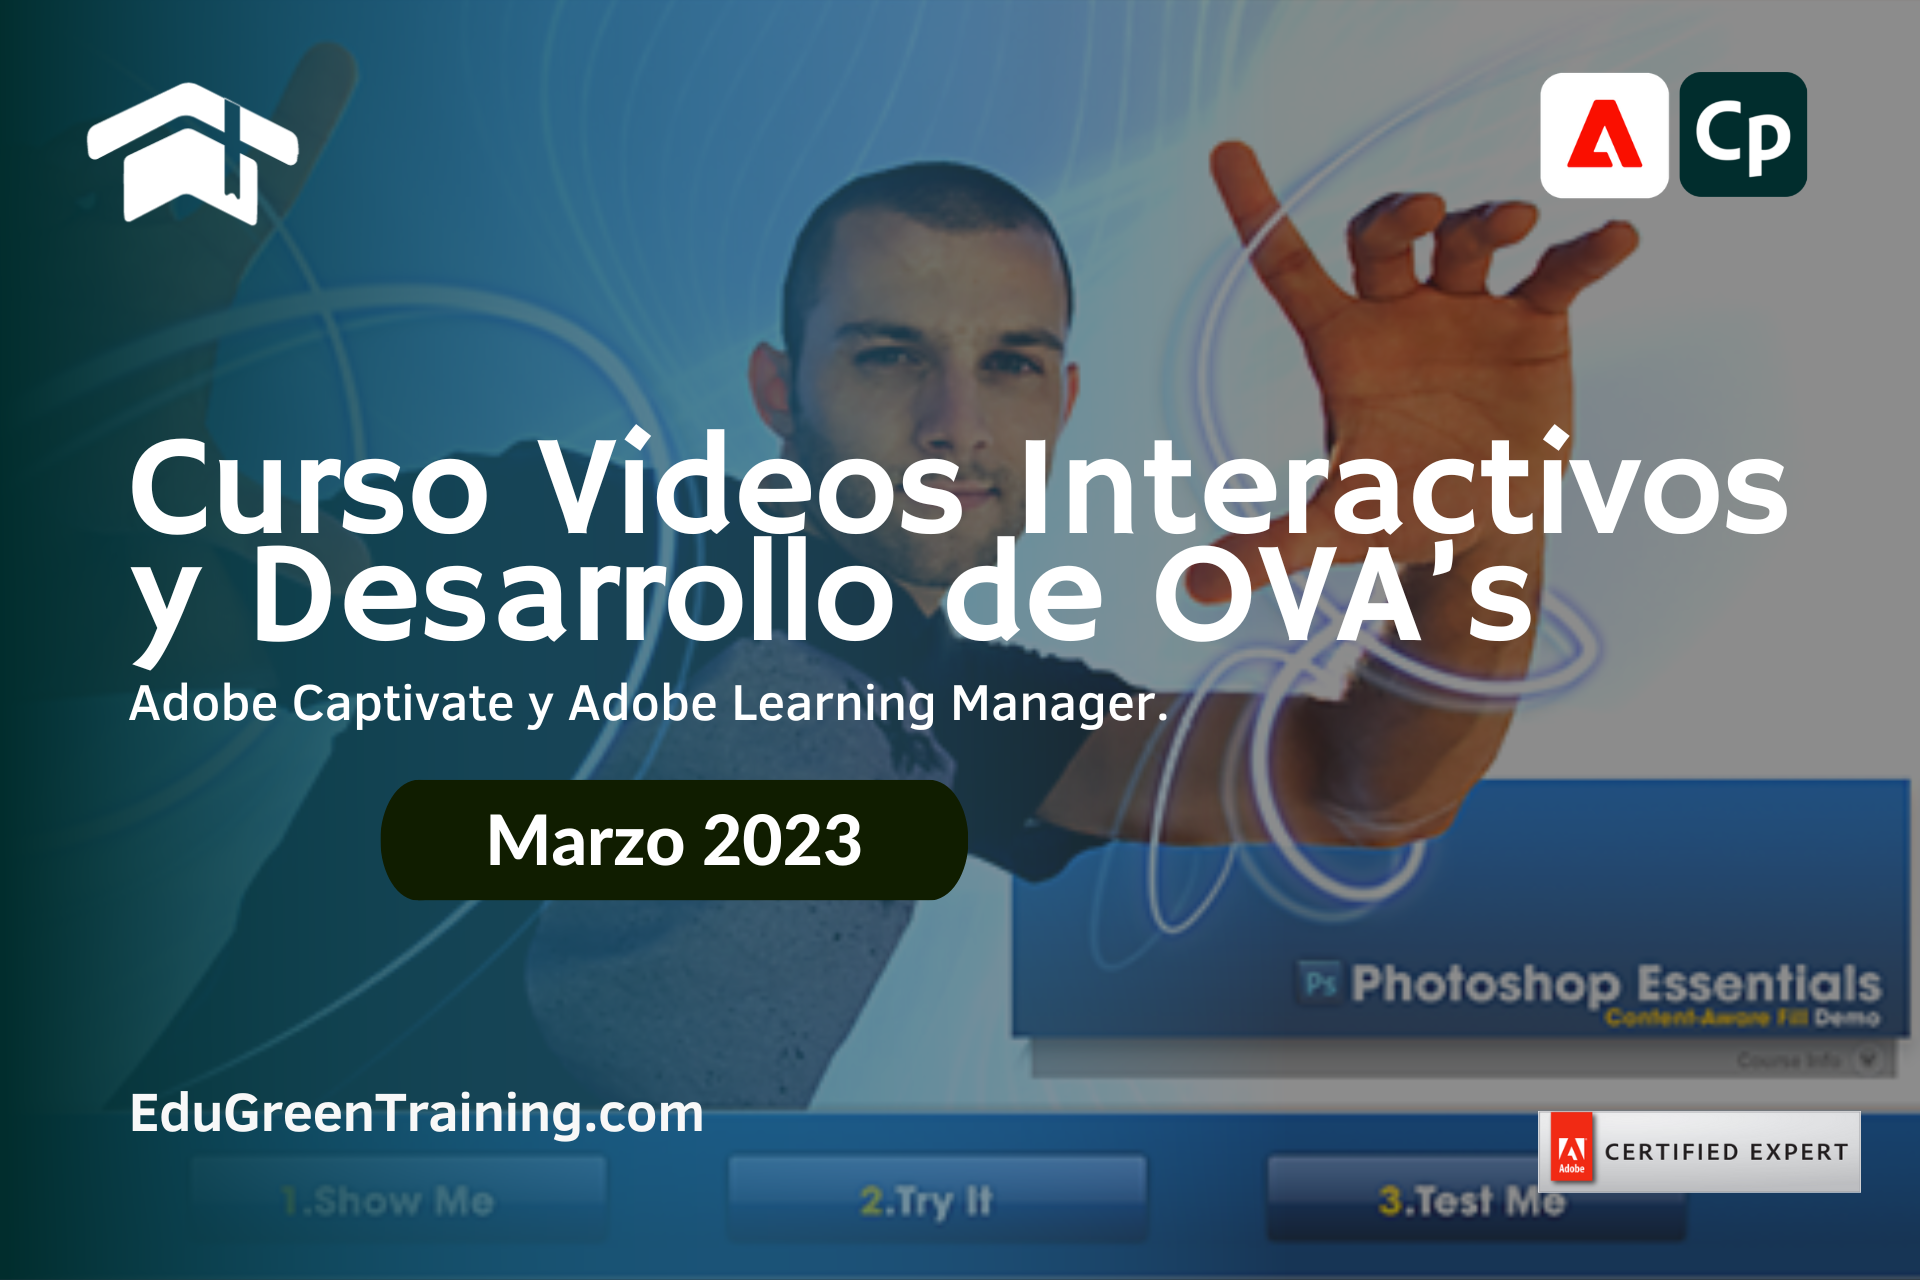 Curso Videos Interactivos y Objetos Virtuales de Aprendizaje